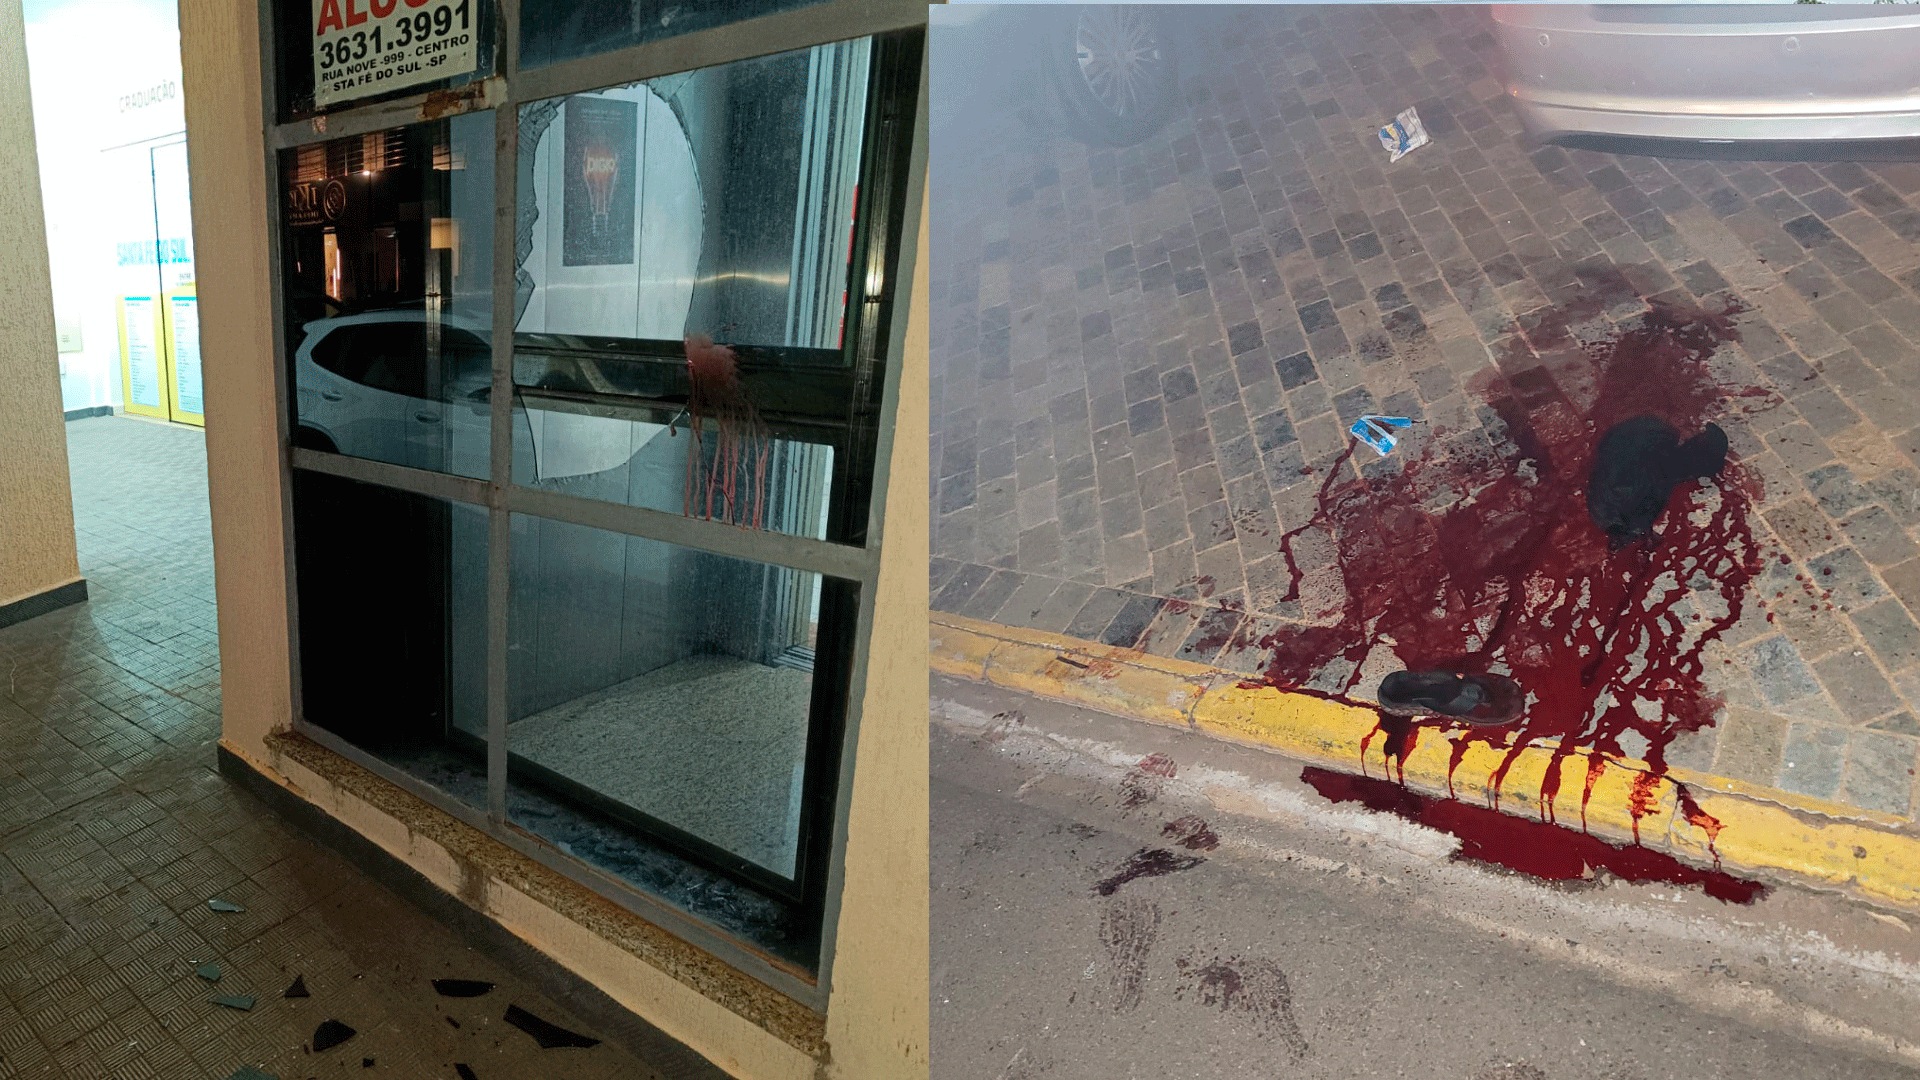 Adolescente corta o braço após 'surtar' e quebrar porta de vidro de prédio comercial no centro de Santa Fé do Sul